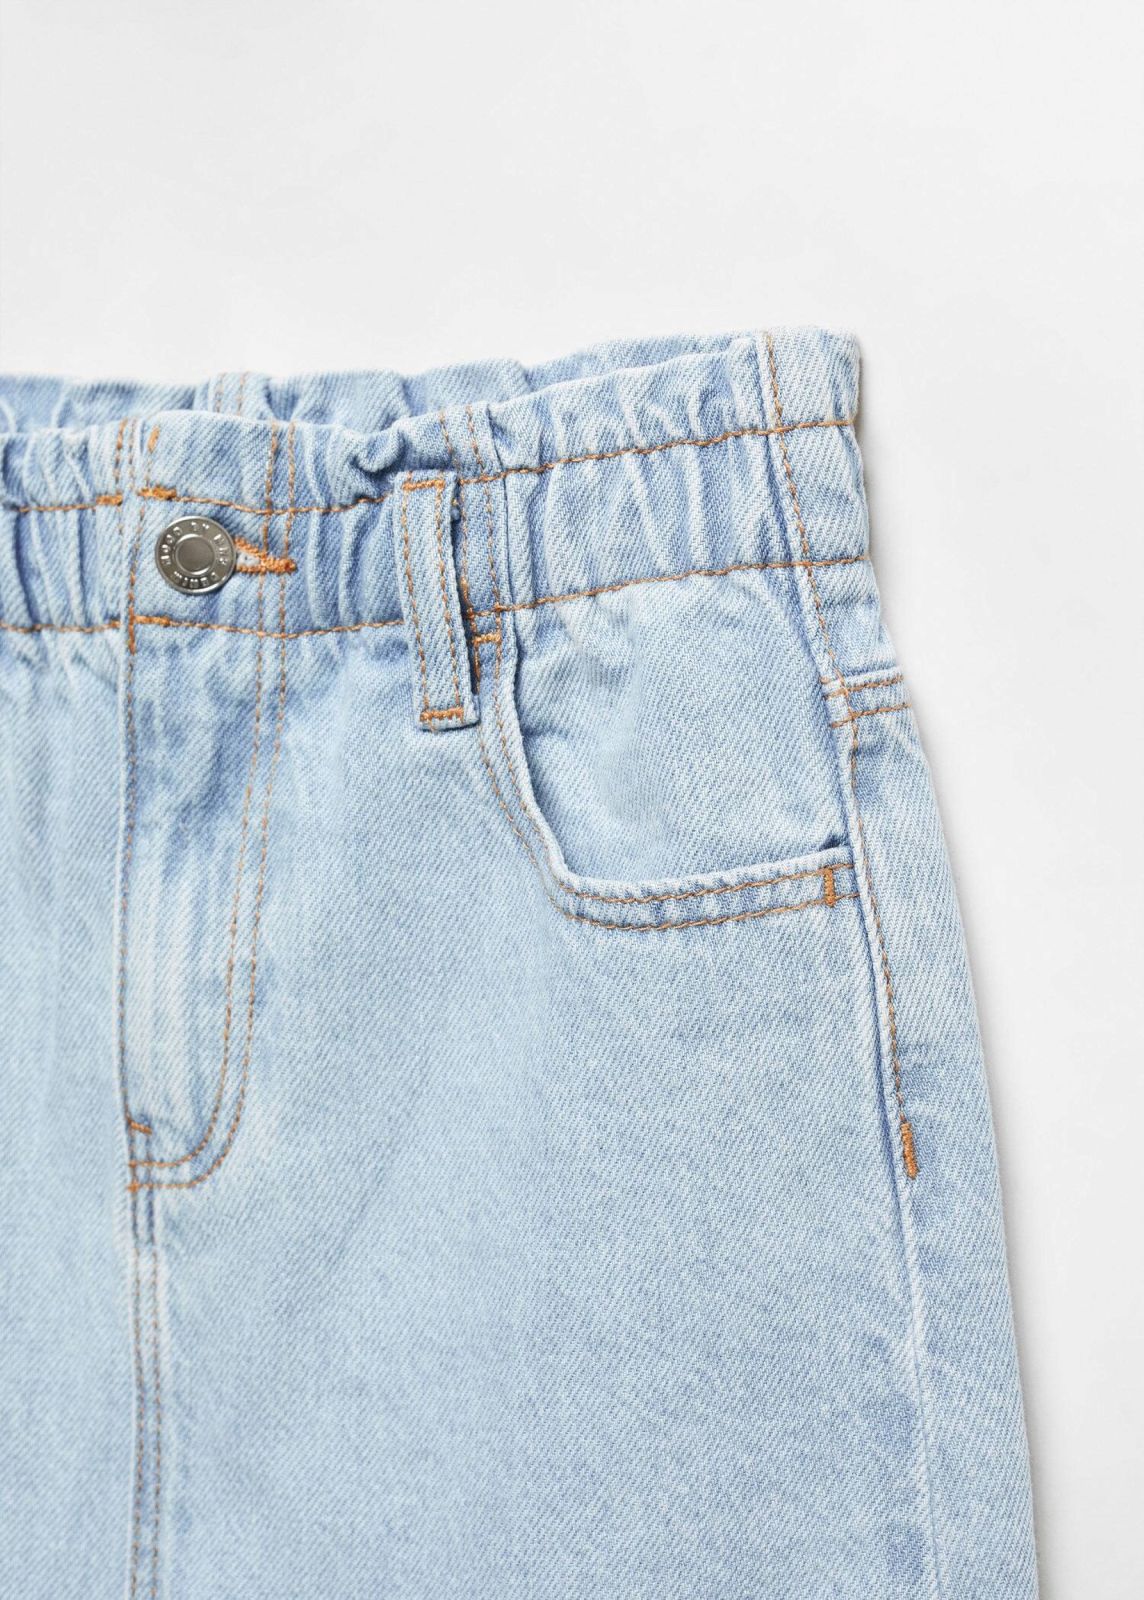  חצאית ג'ינס מיני / בנות של MANGO